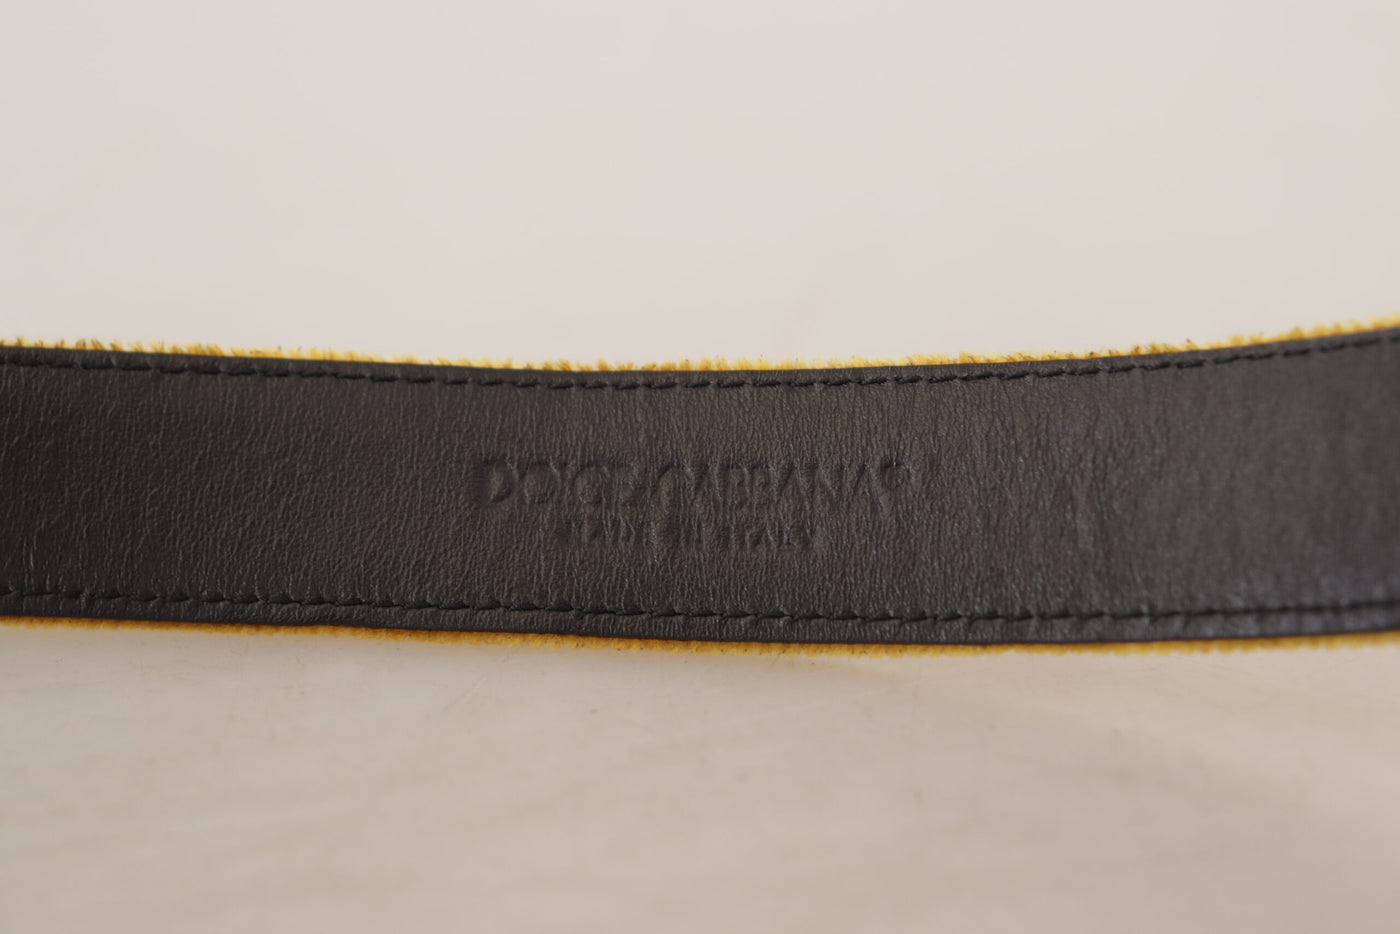 Dolce & Gabbana Mustard Velvet Gold Logo Engraved Metal Buckle Belt